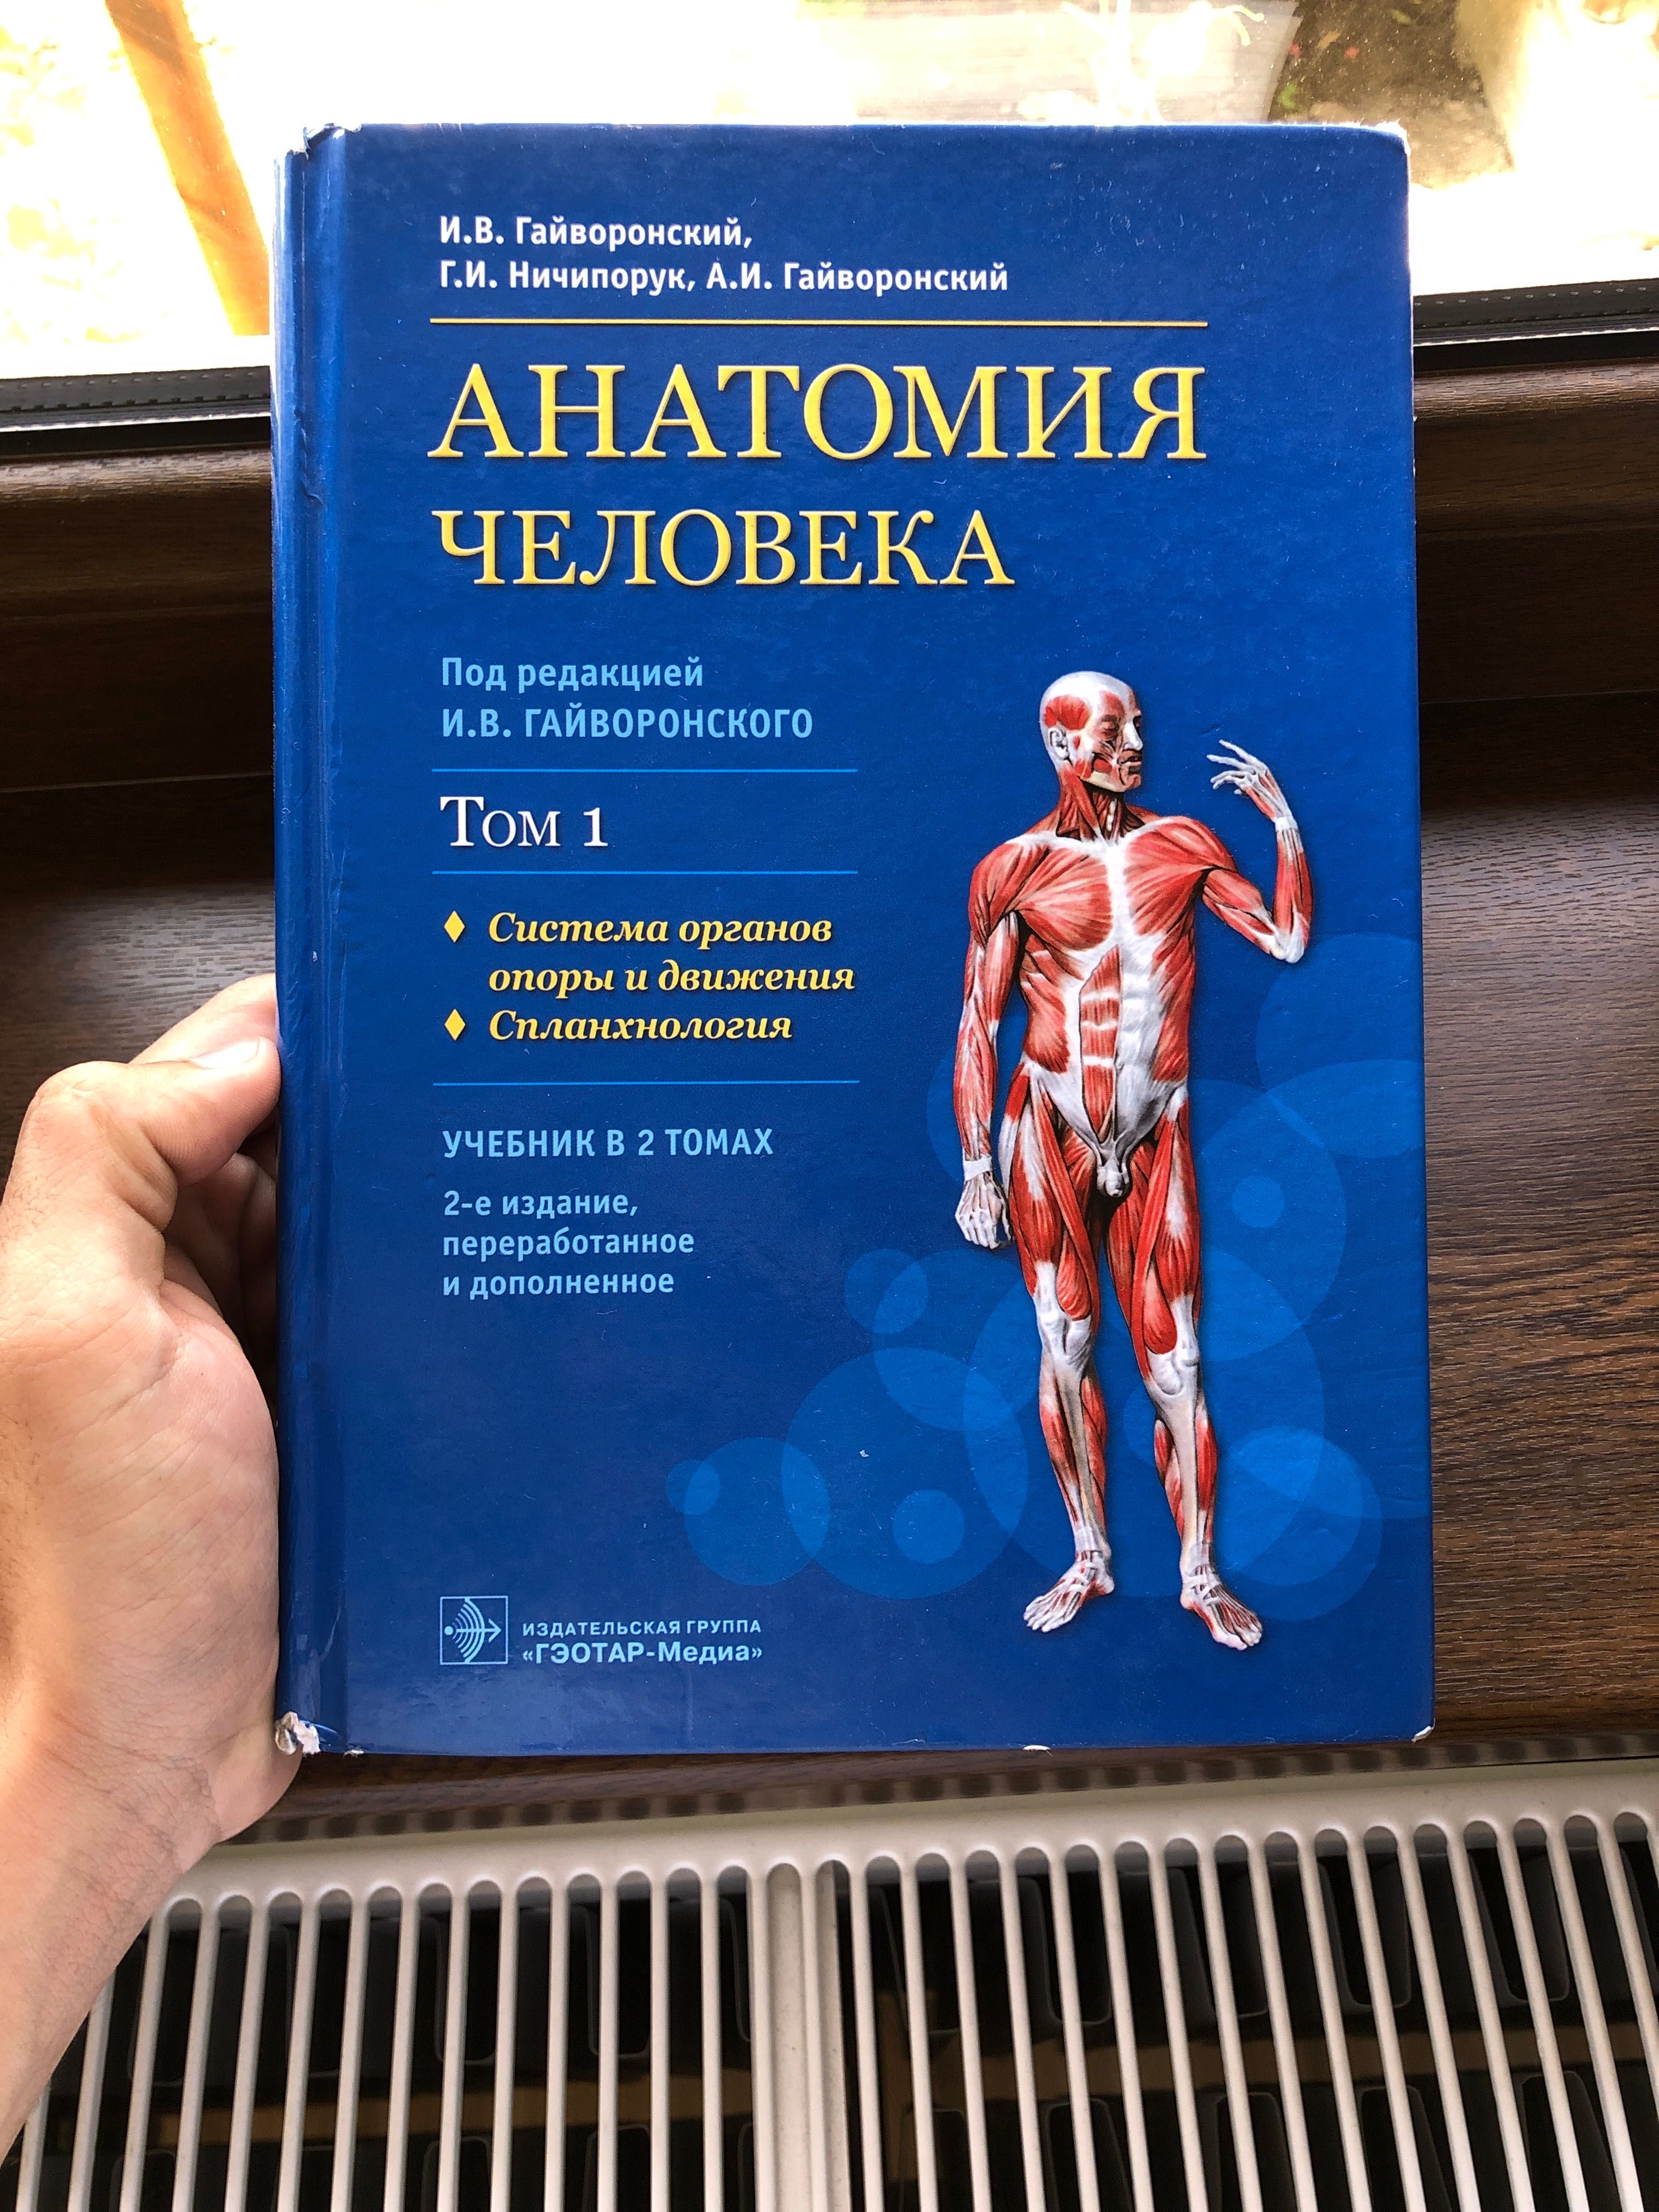 Книга Анатомия Гайворонский 1 Том